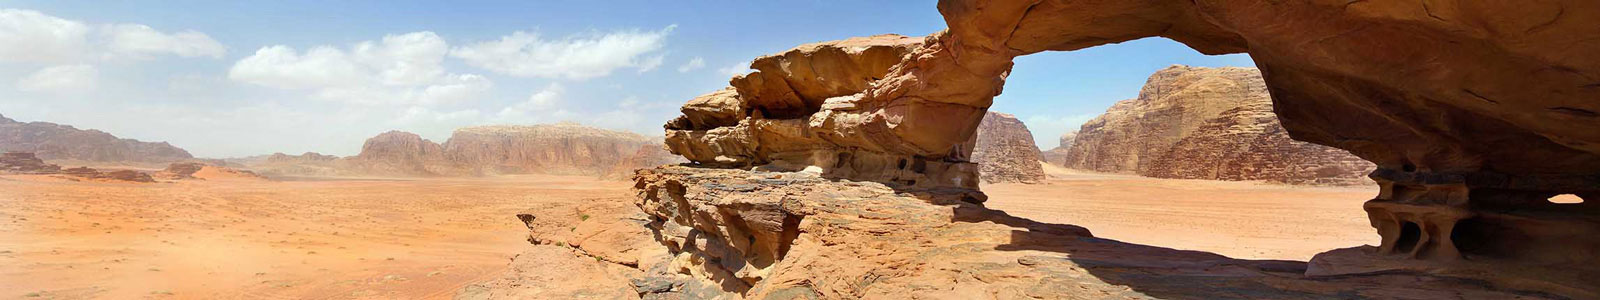 №3244 - Природный горный «мост» в пустыне Иордании